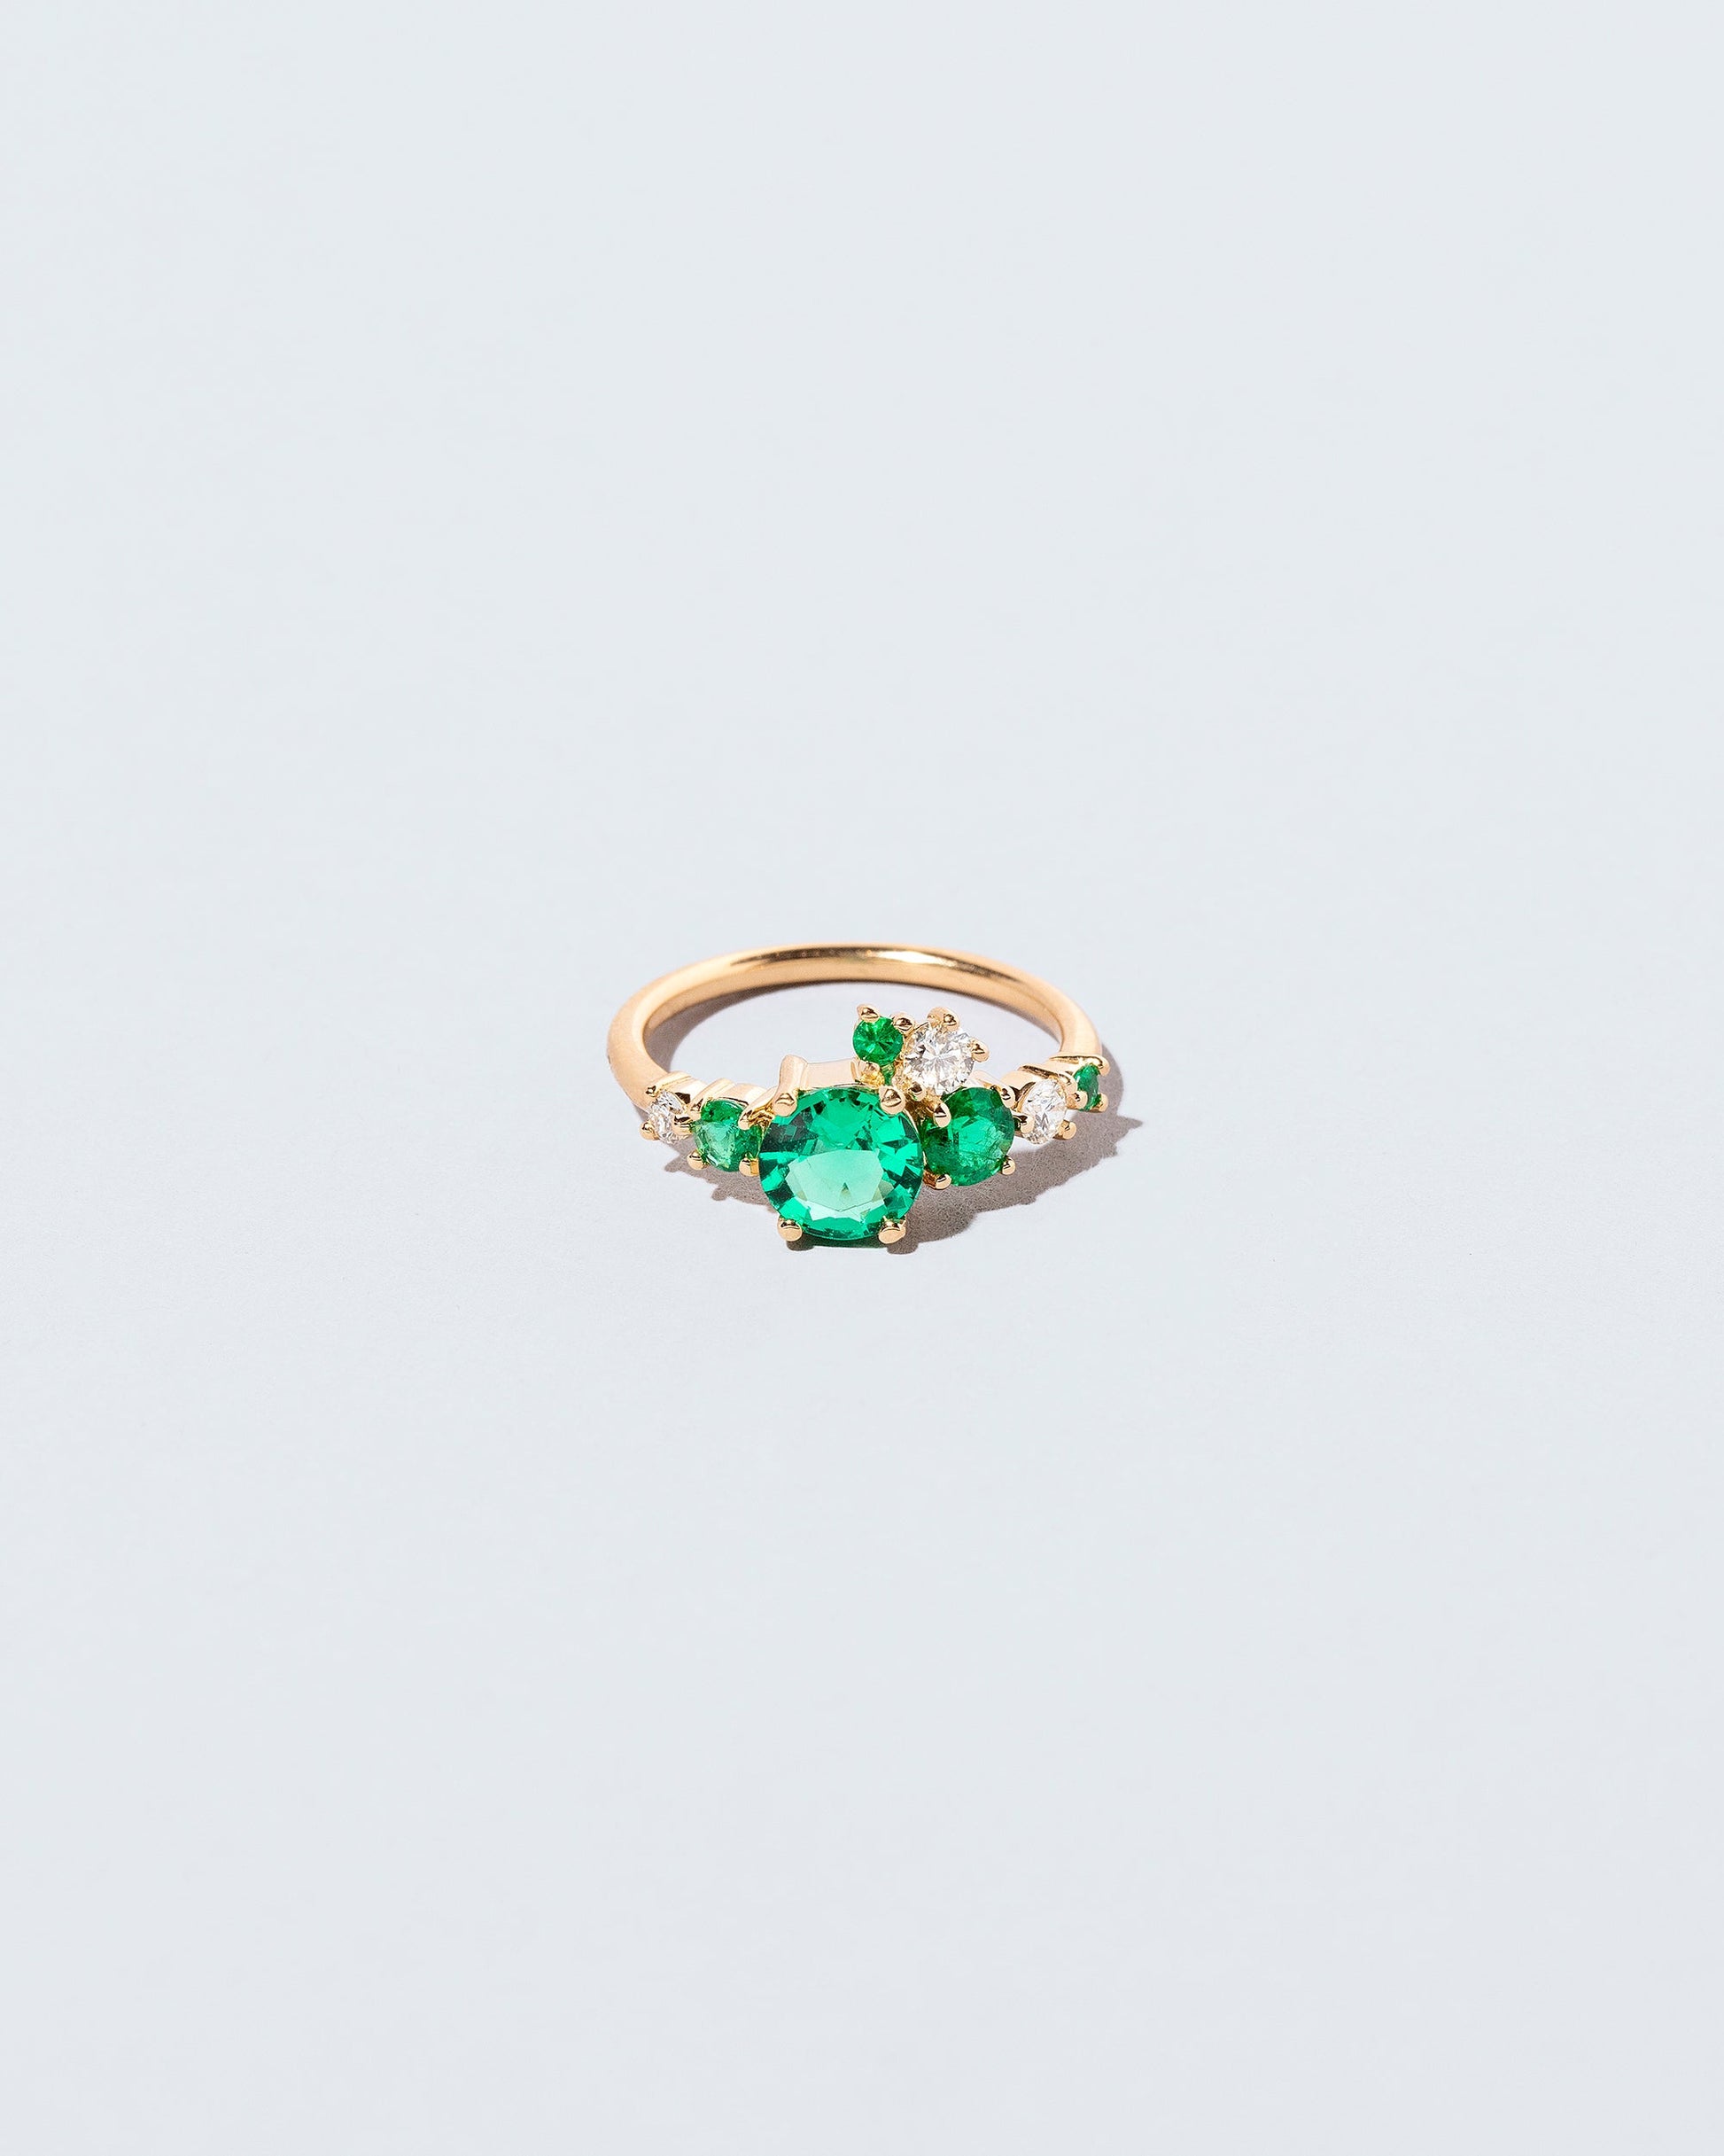  Luna Ring - Emerald on light color background.